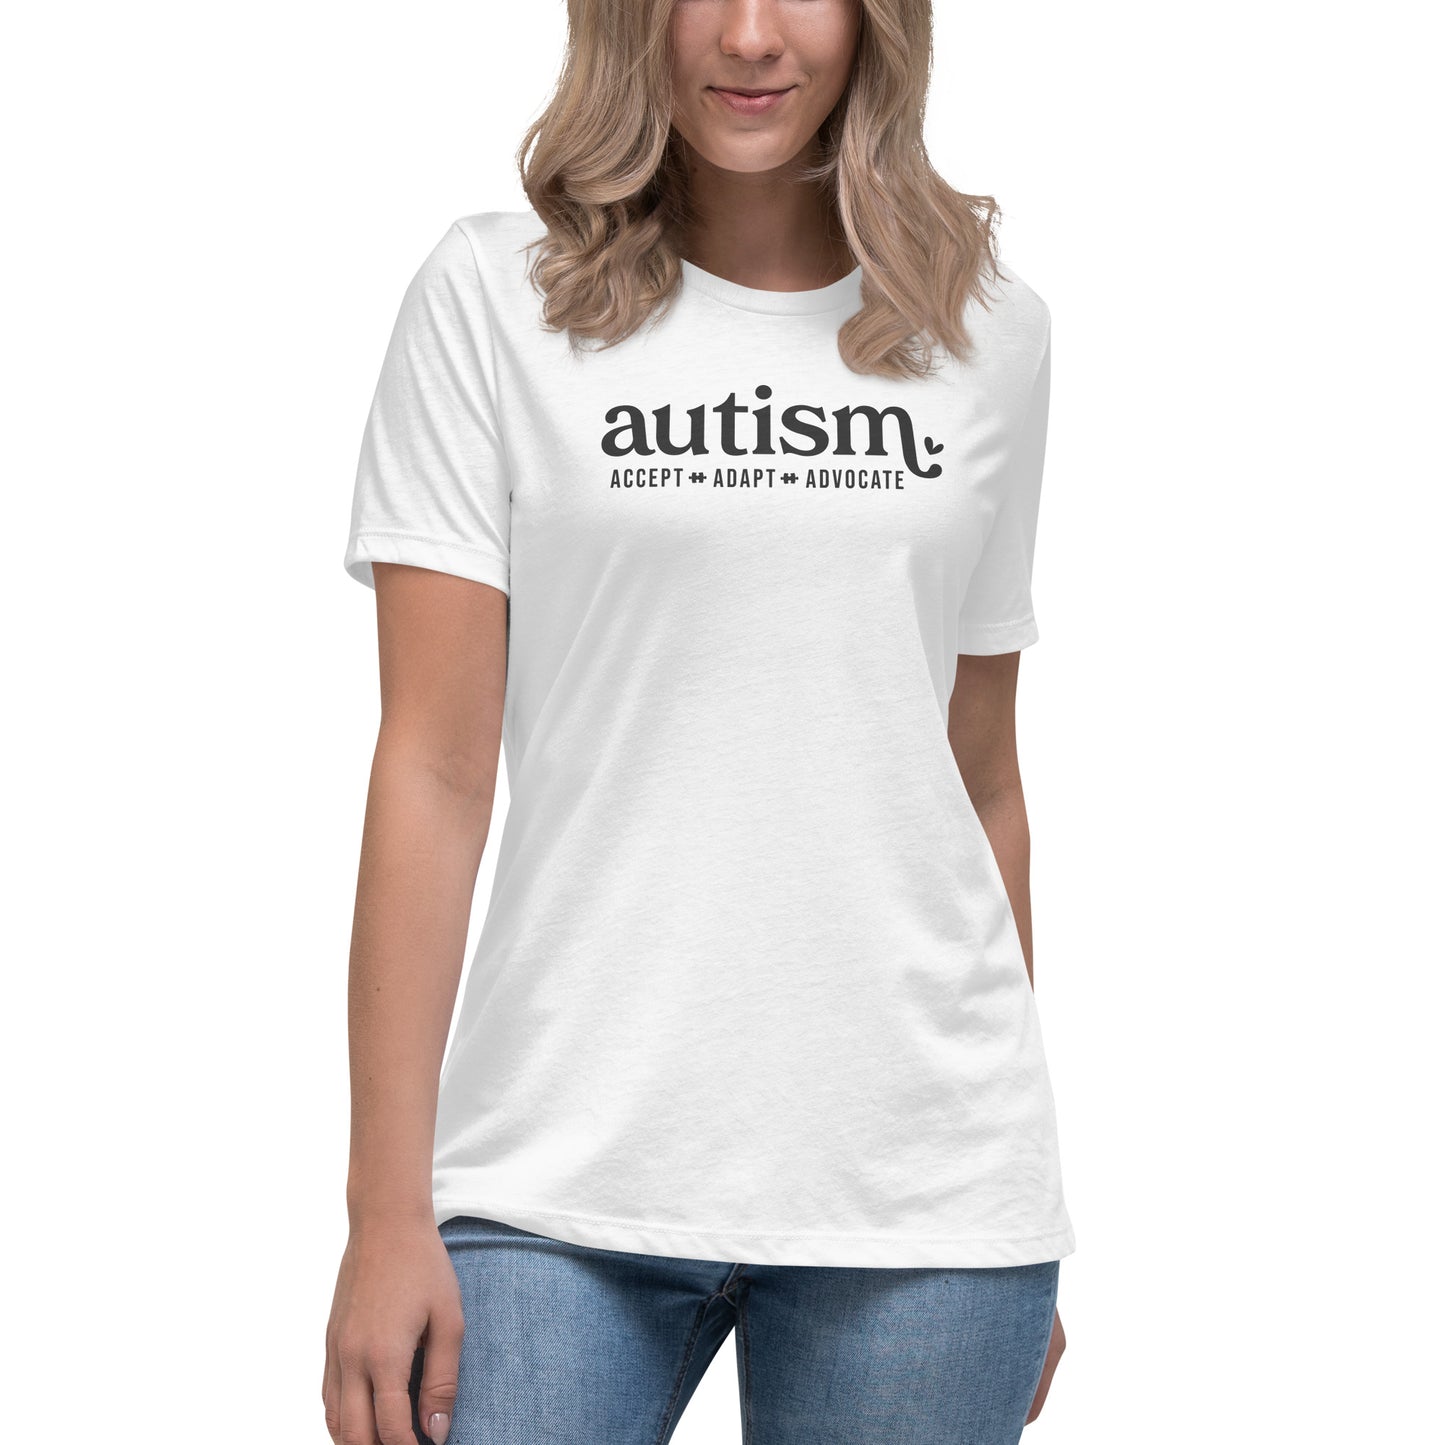 Autism - Accept. Adapt. Advocate. [Women’s T-shirt]